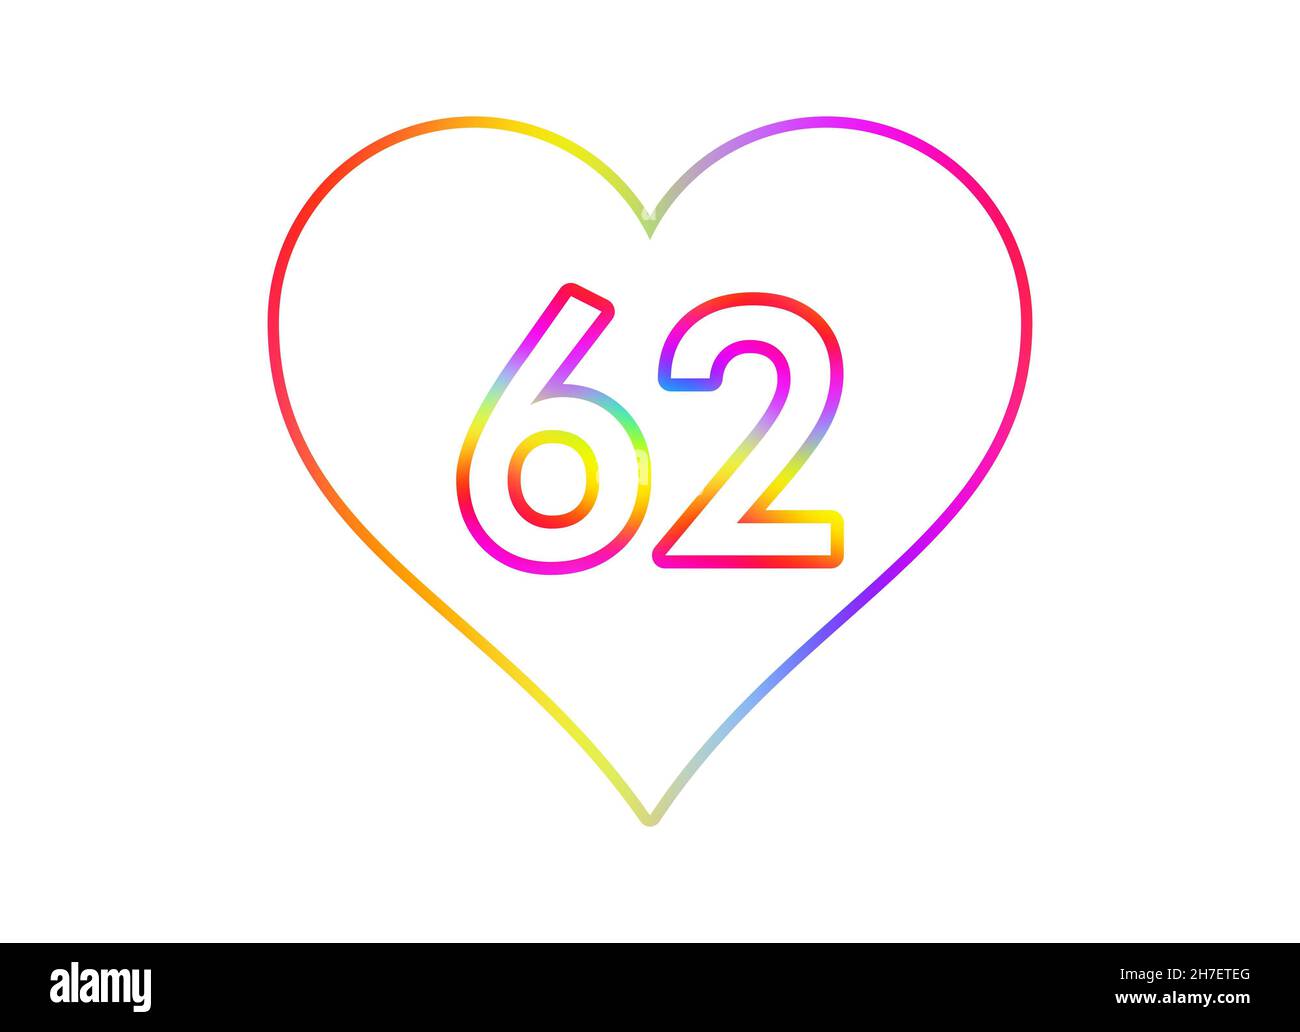 Nummer 62 in ein weißes Herz mit Regenbogenfarben umrandet. Stockfoto